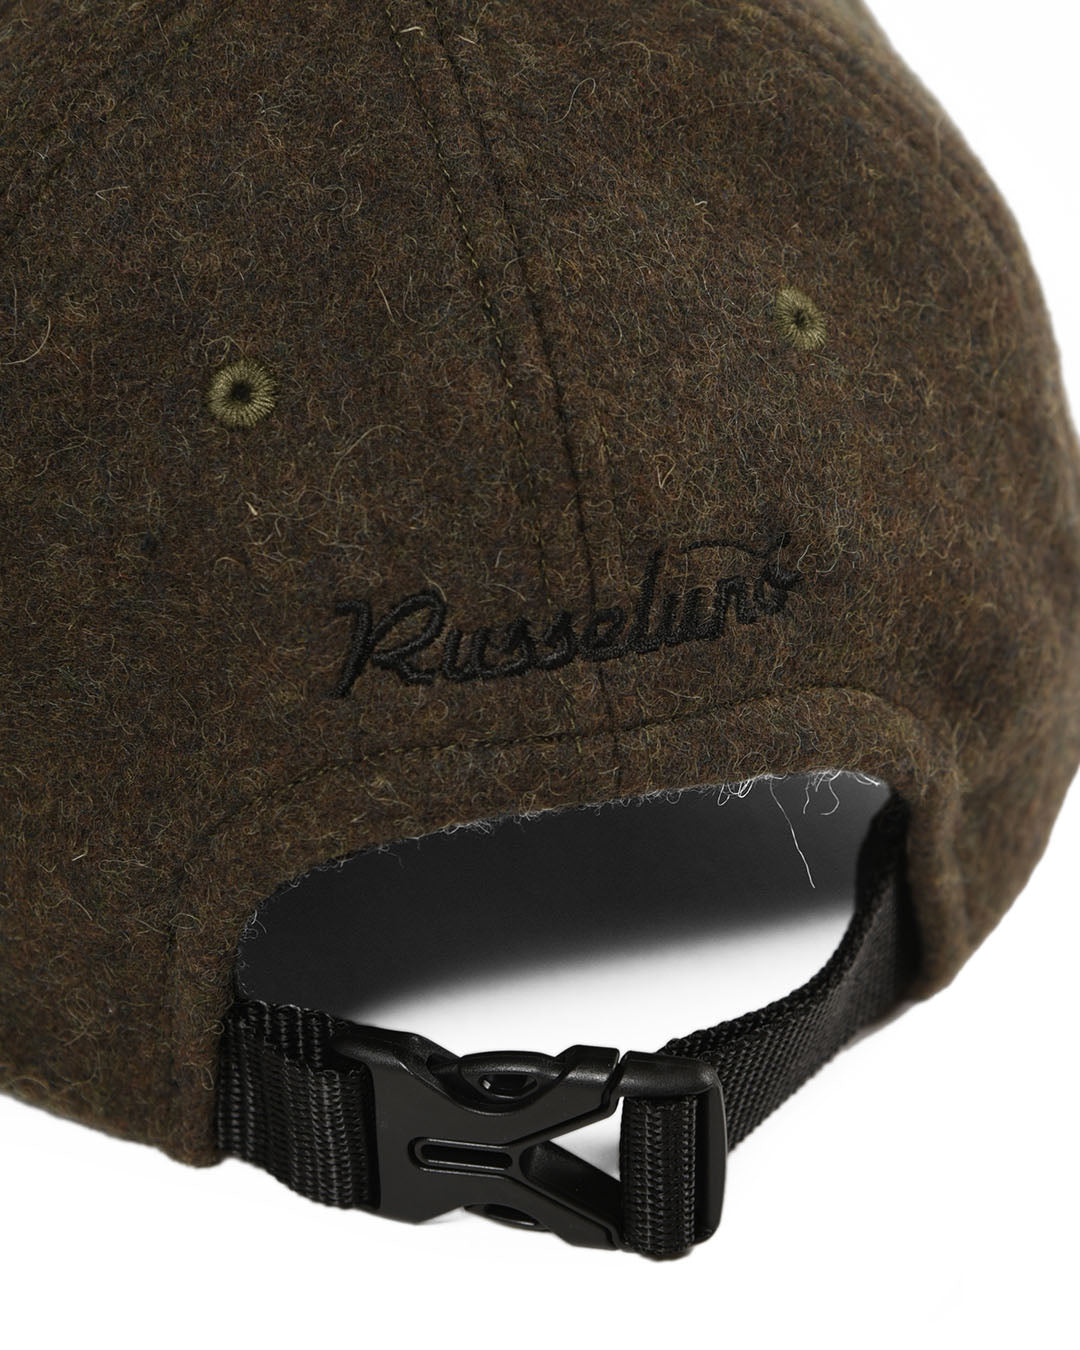 RUS FELT CAP